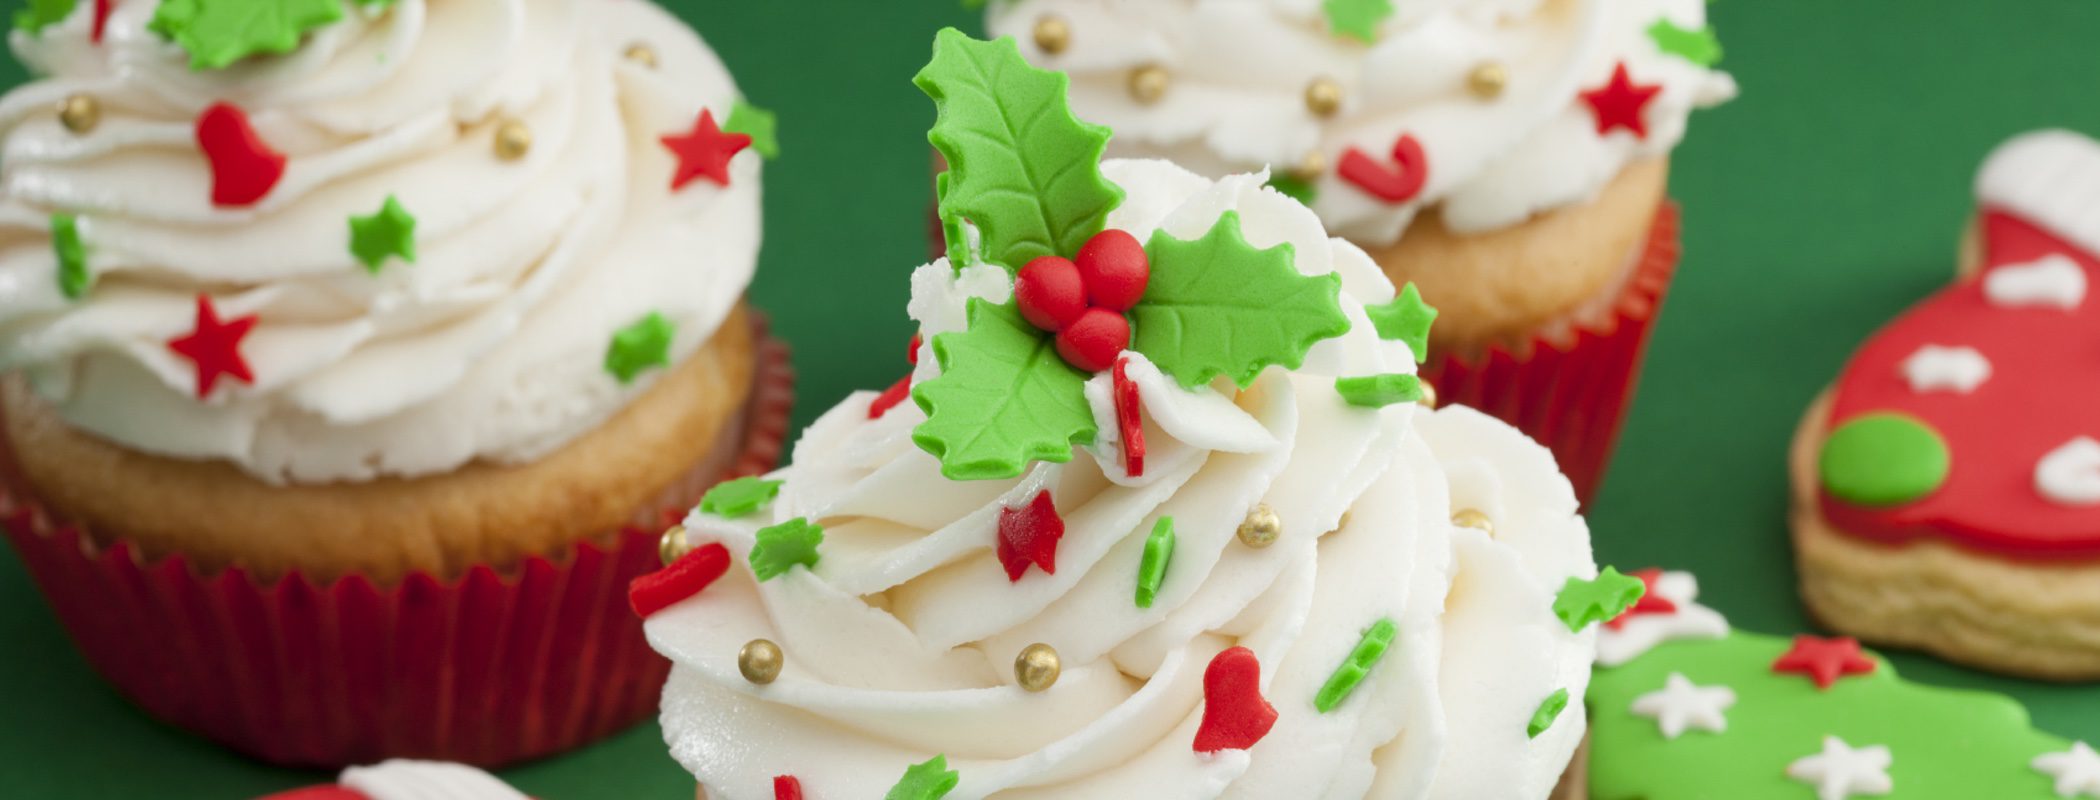 Postres de Navidad: Cupcakes de Navidad